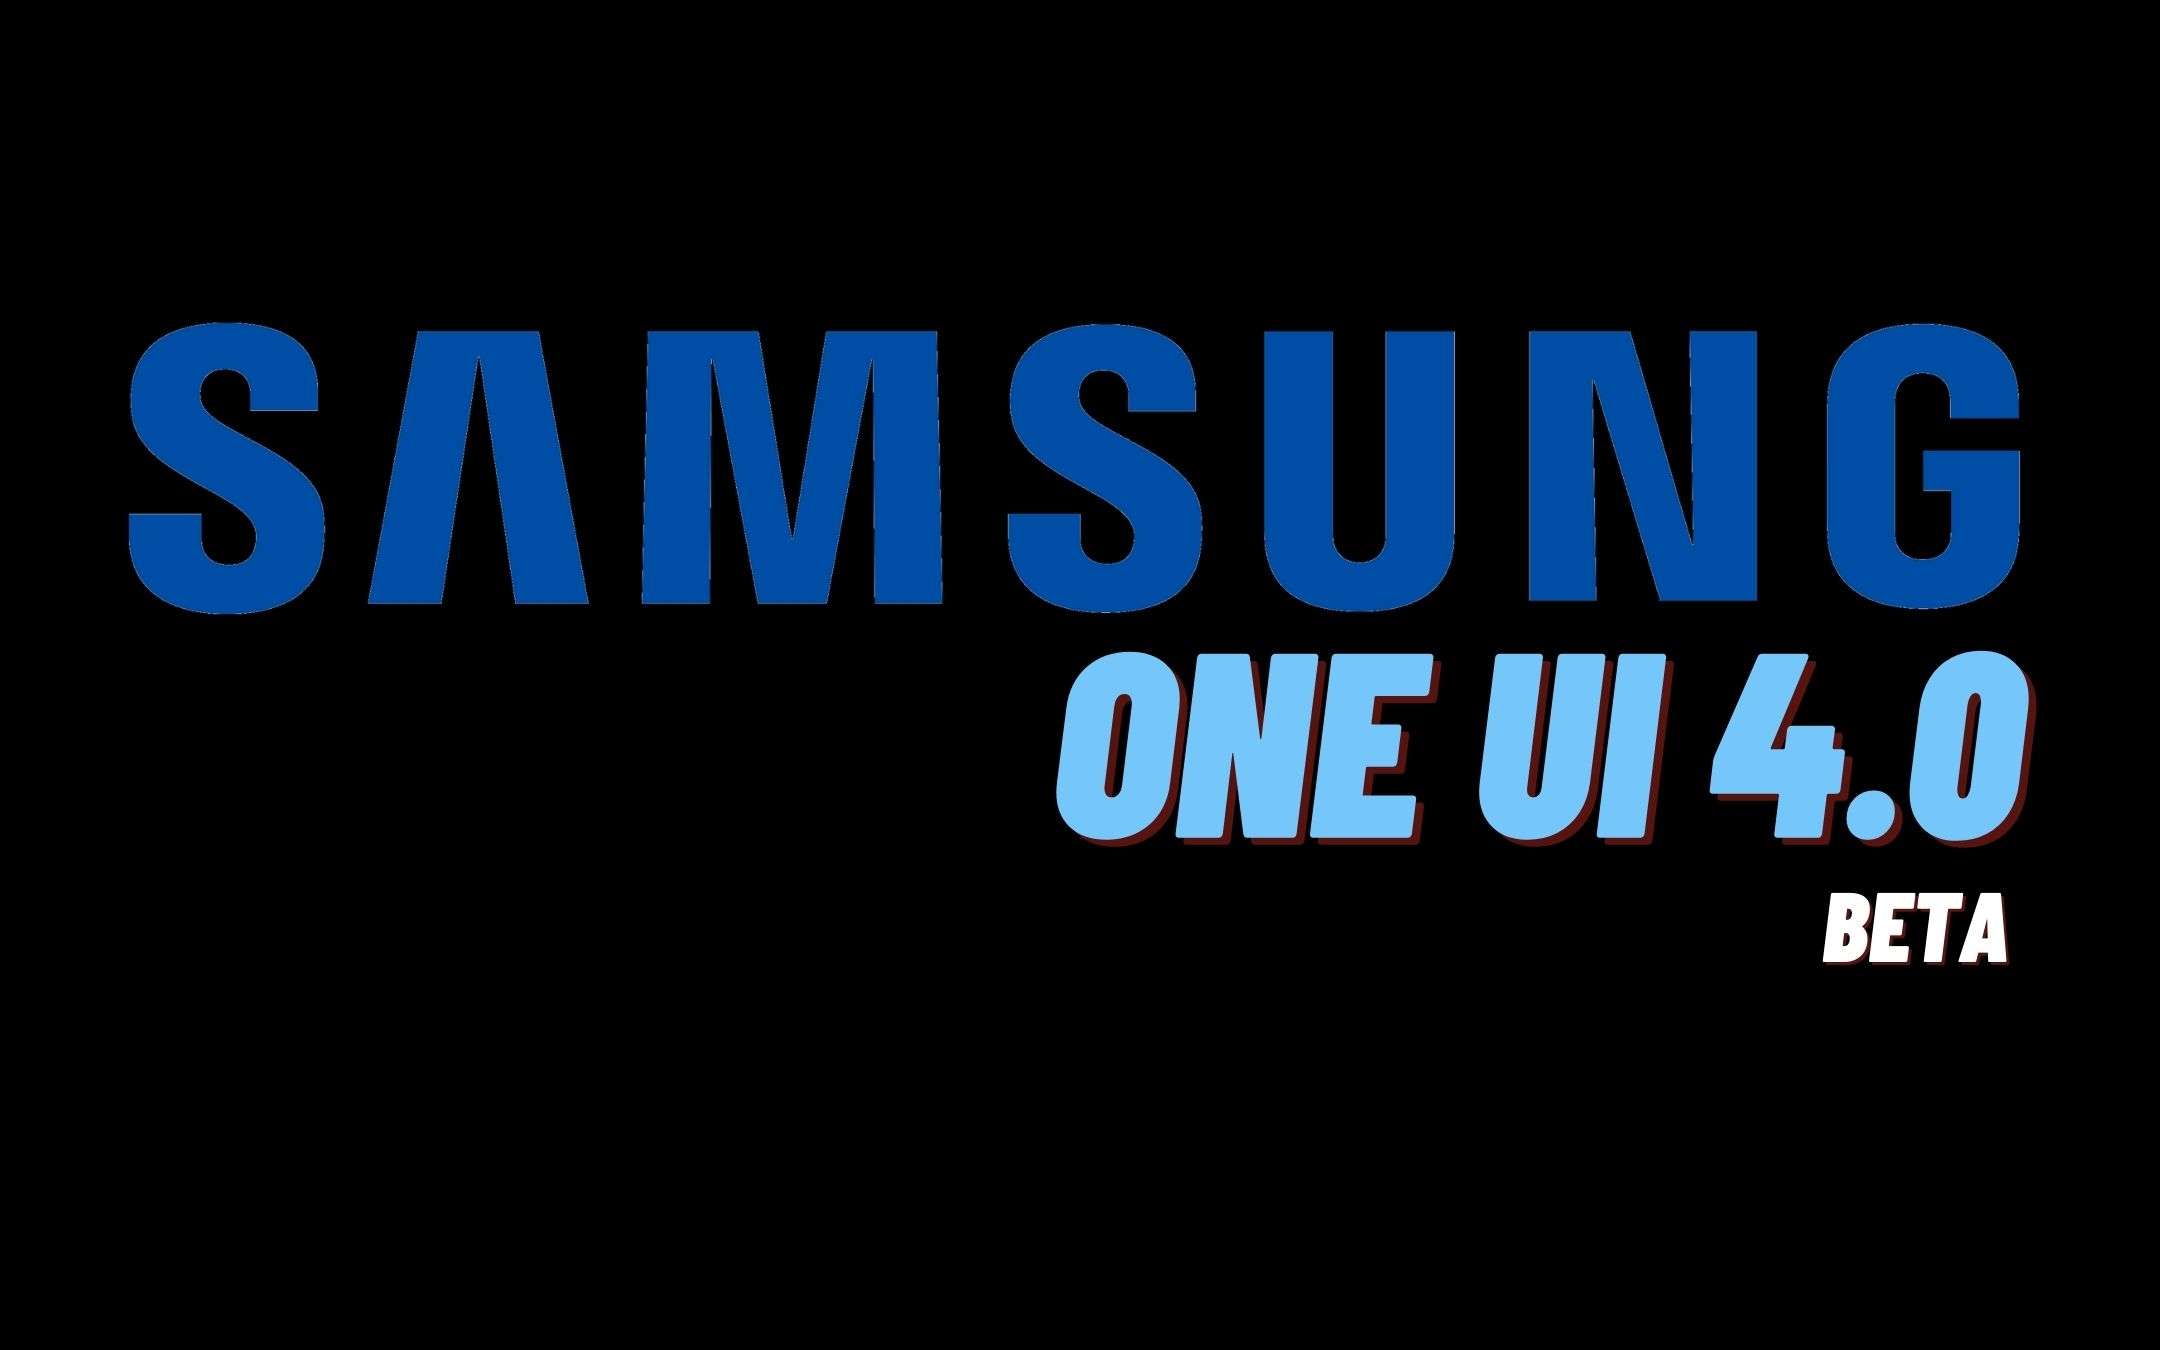 Samsung ritarda il debutto della nuova One UI 4.0 Beta